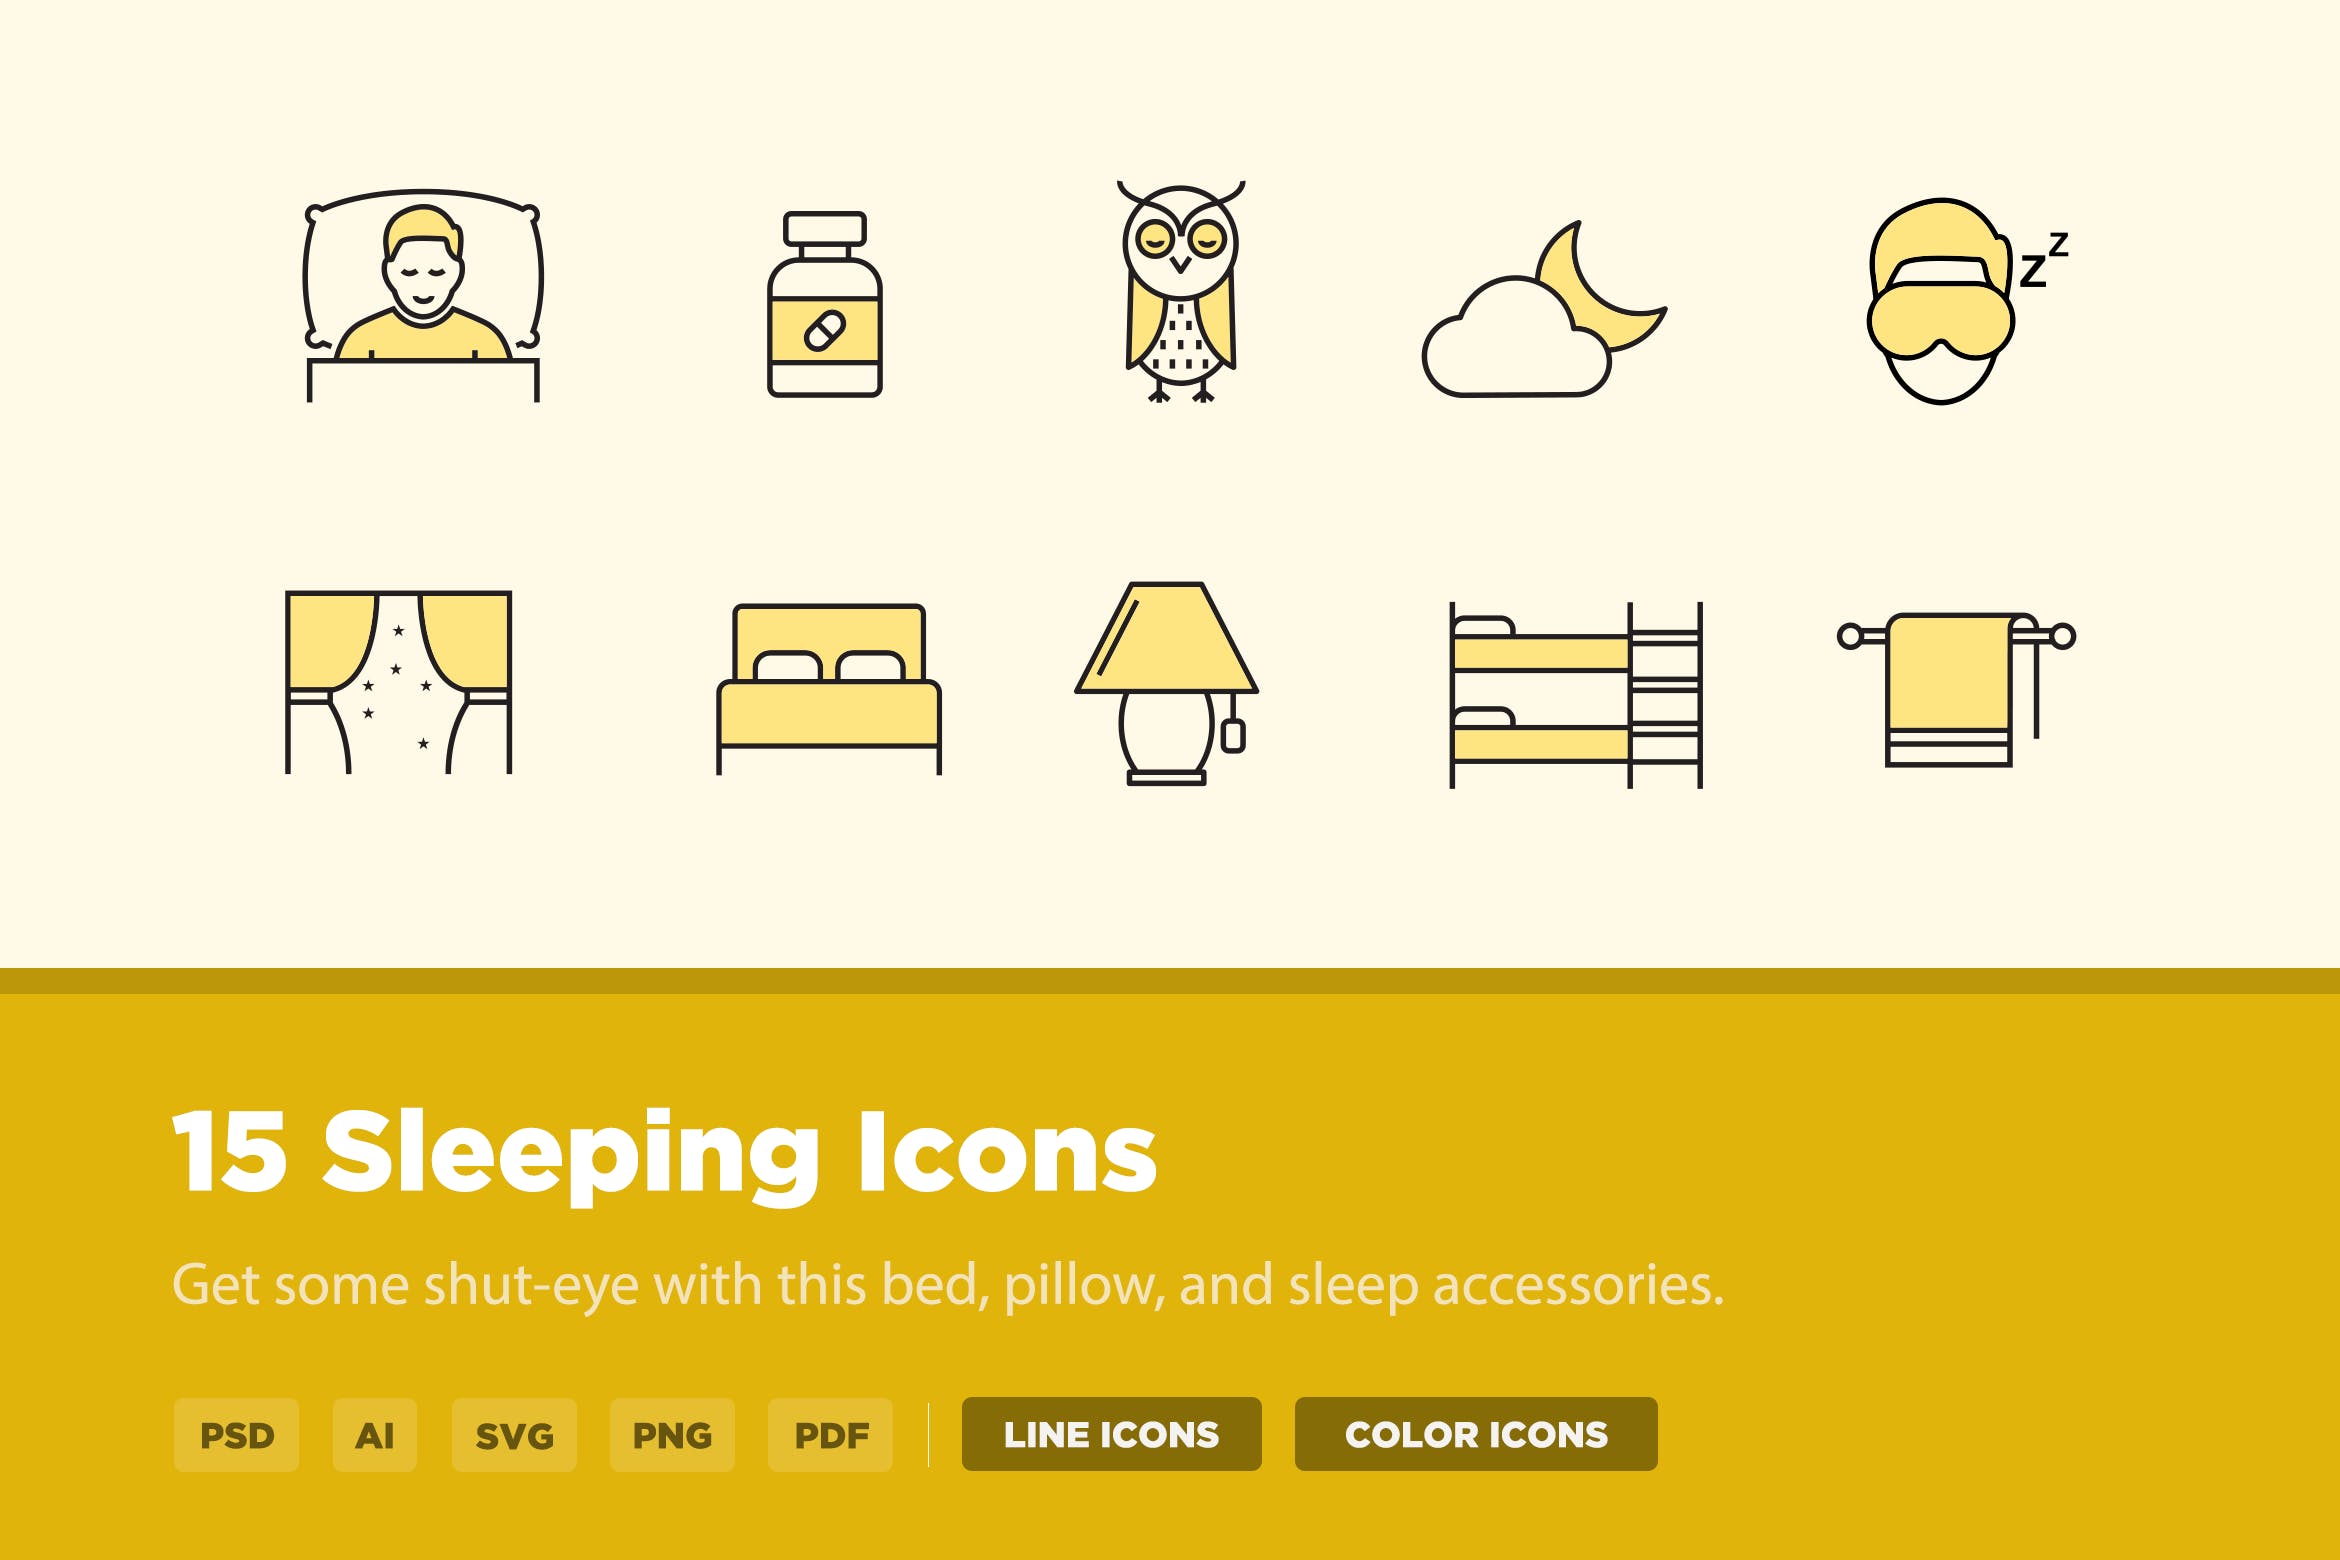 15枚睡眠主题矢量图标素材 15 Sleeping Icons插图